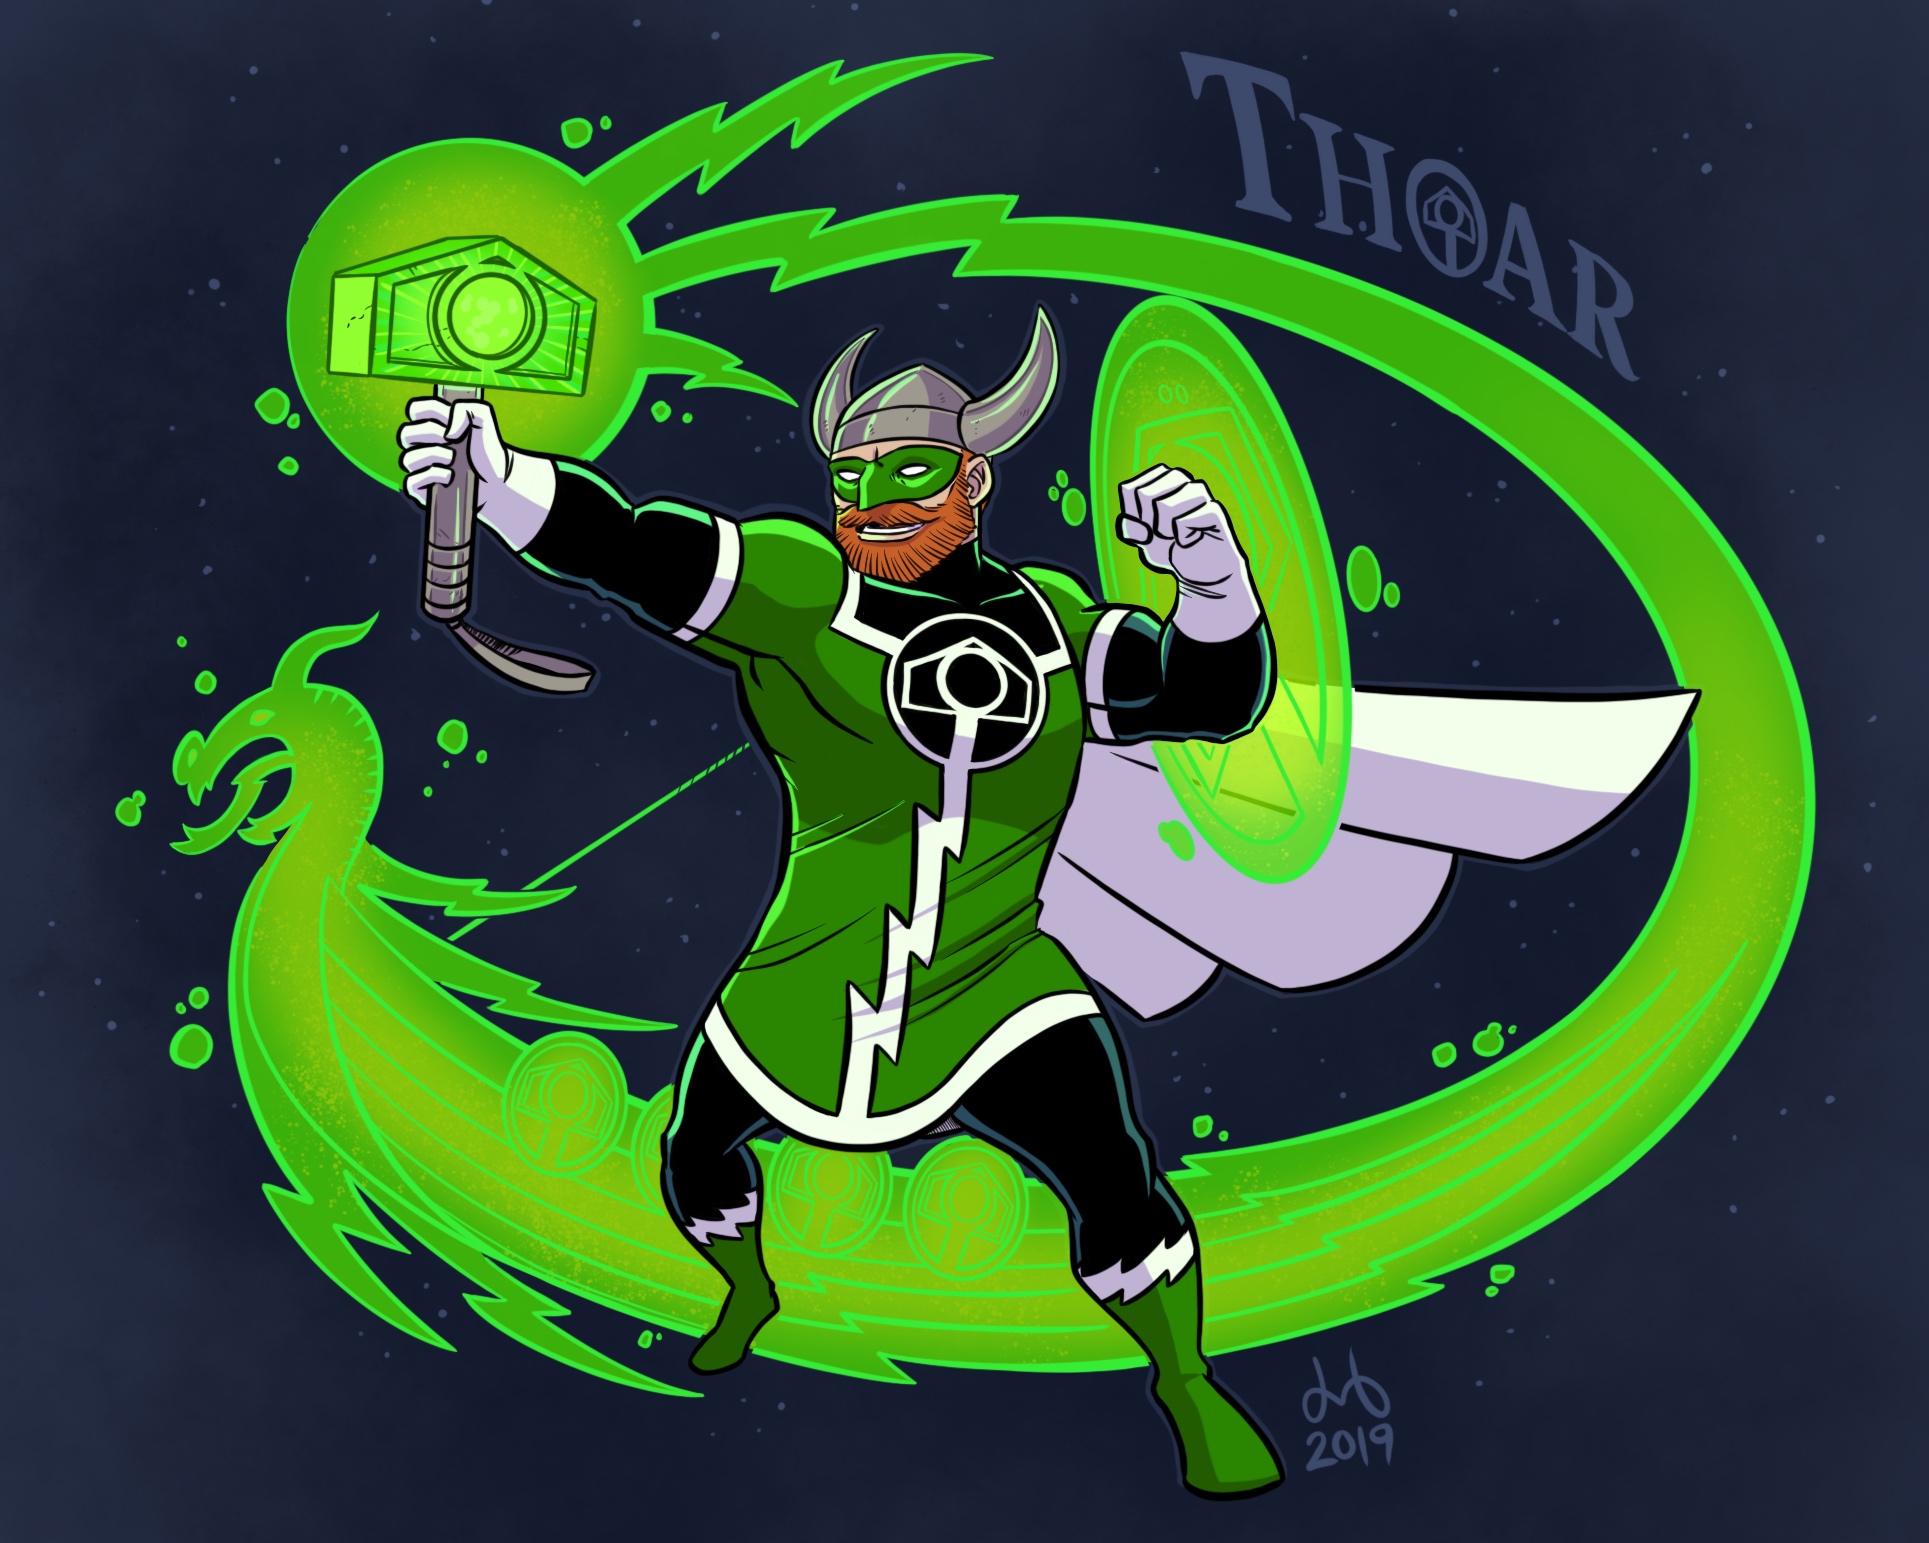 Thoar